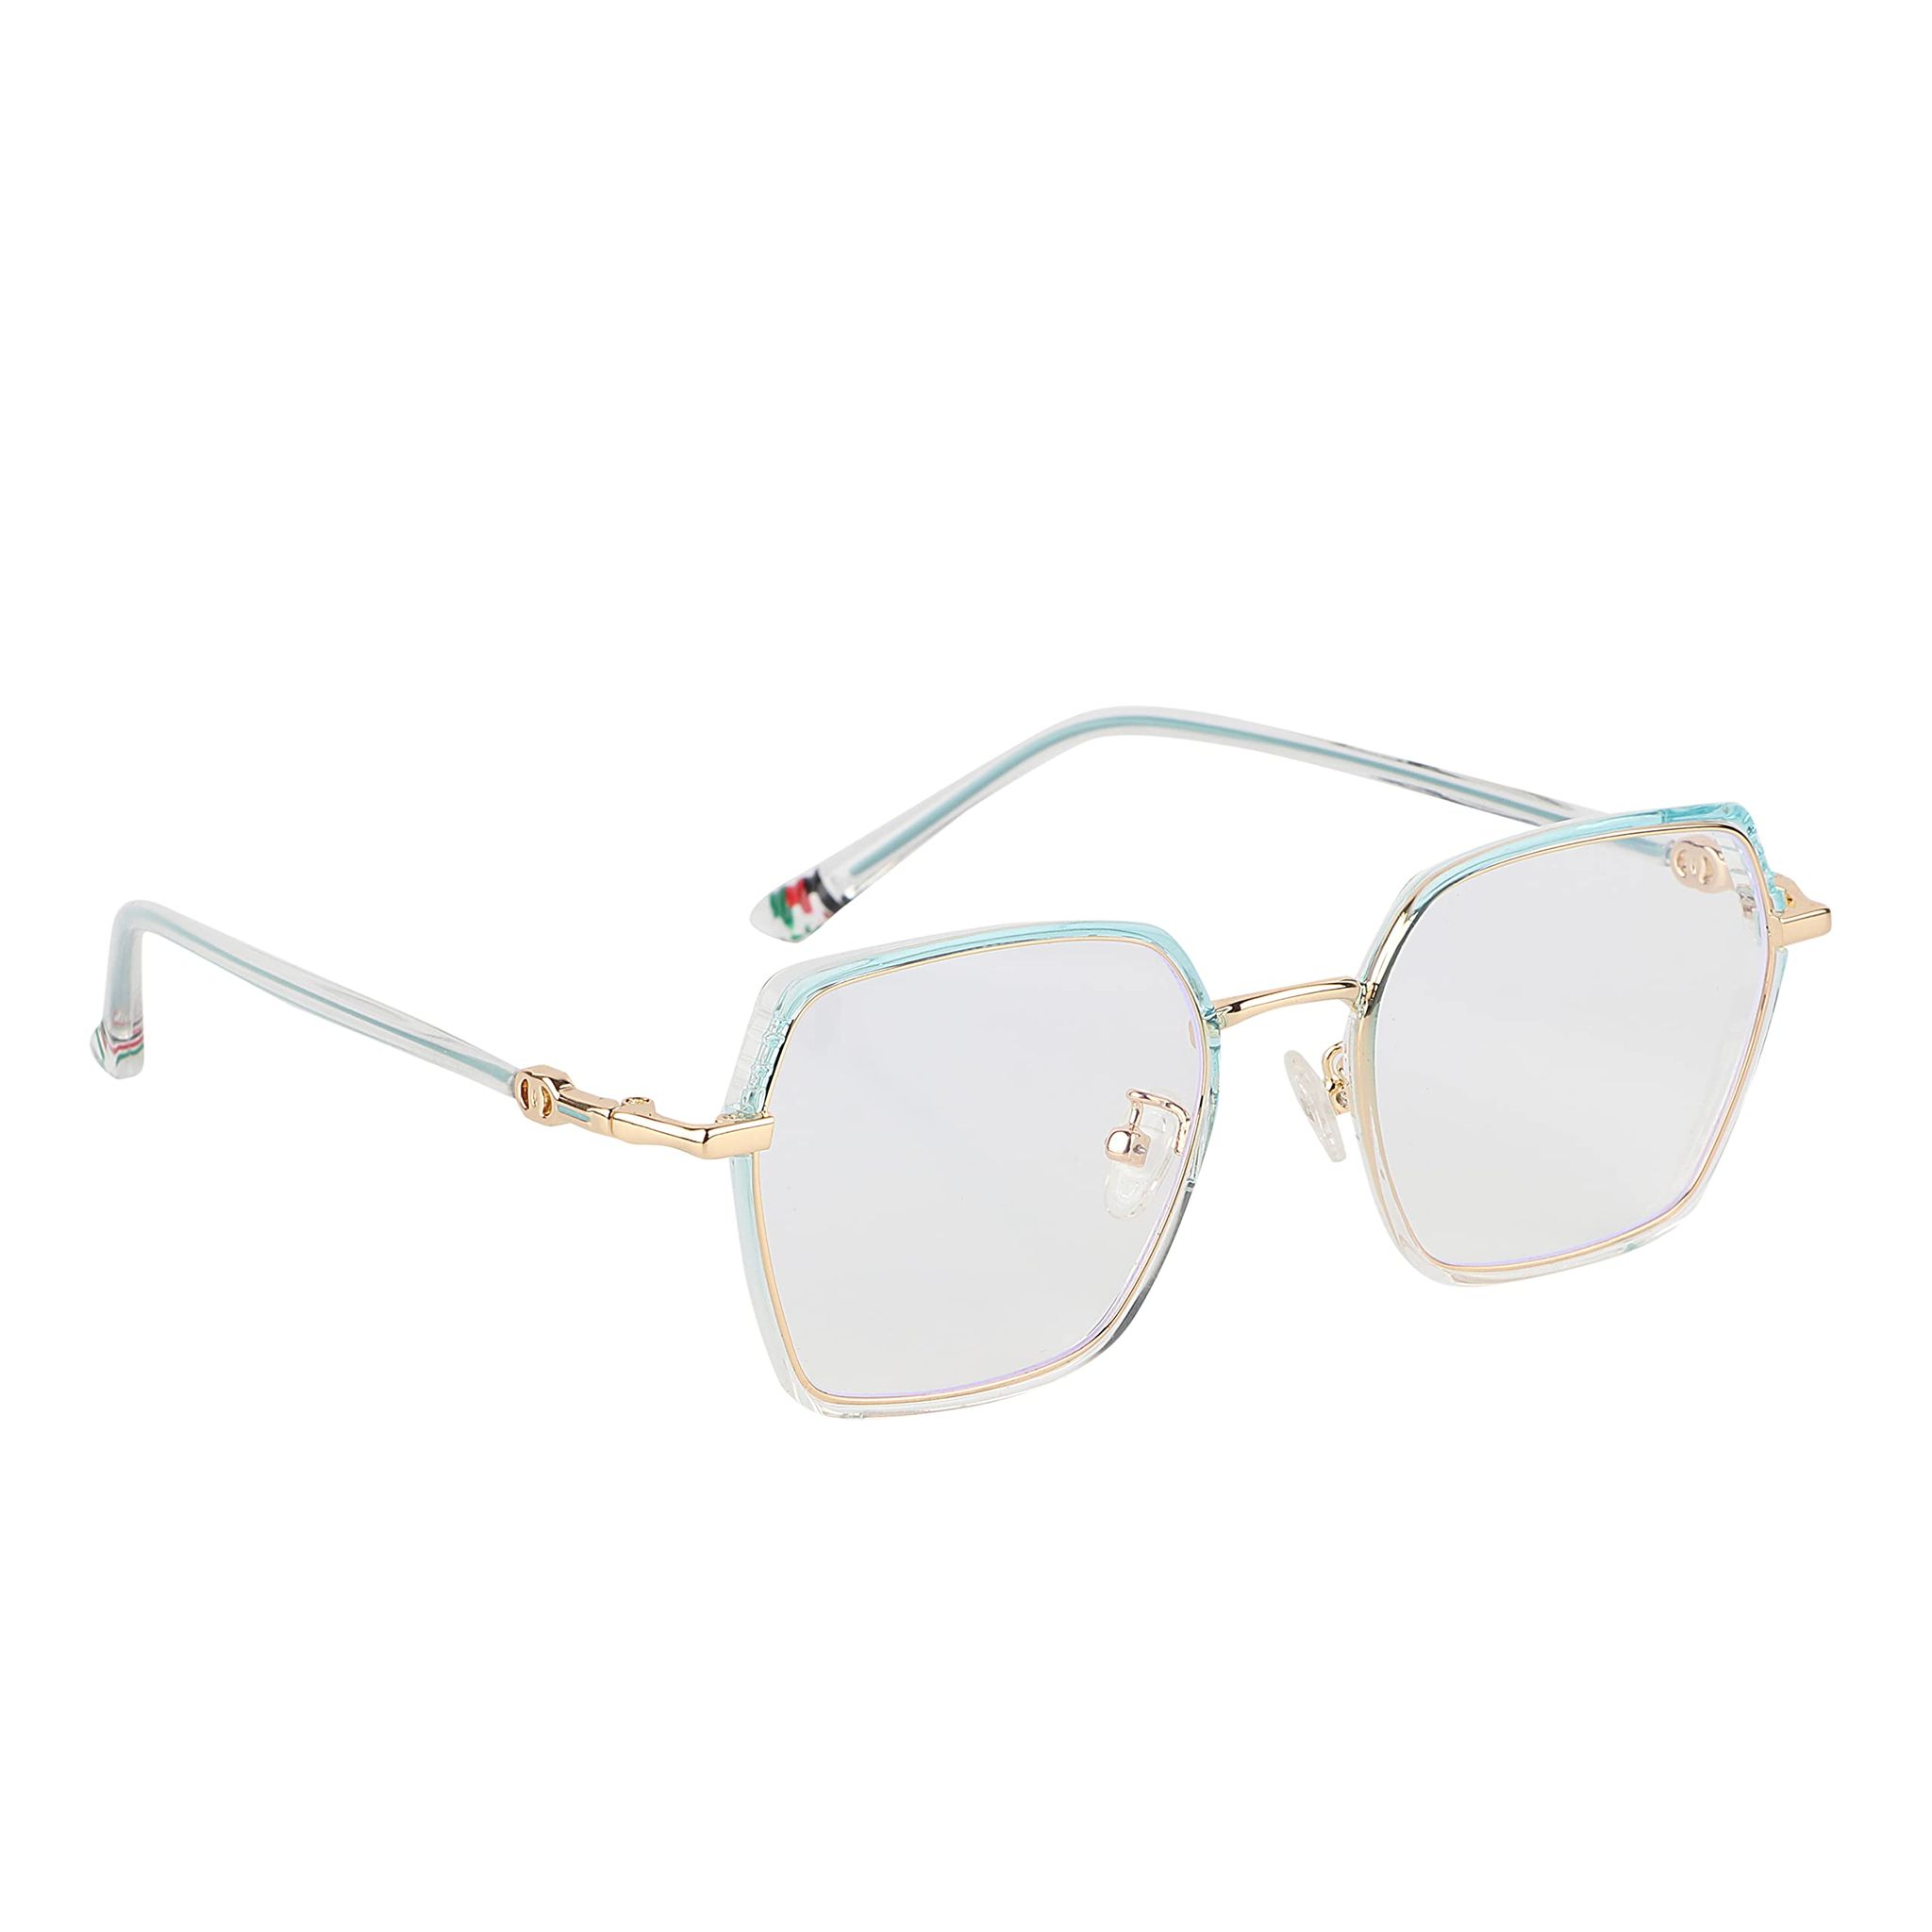 Cleardekho Orange Full Rim Wayfarer – Eyeglasses - ClearDekho - Eyeglasses,  Sunglasses, Contact Lens, Frames